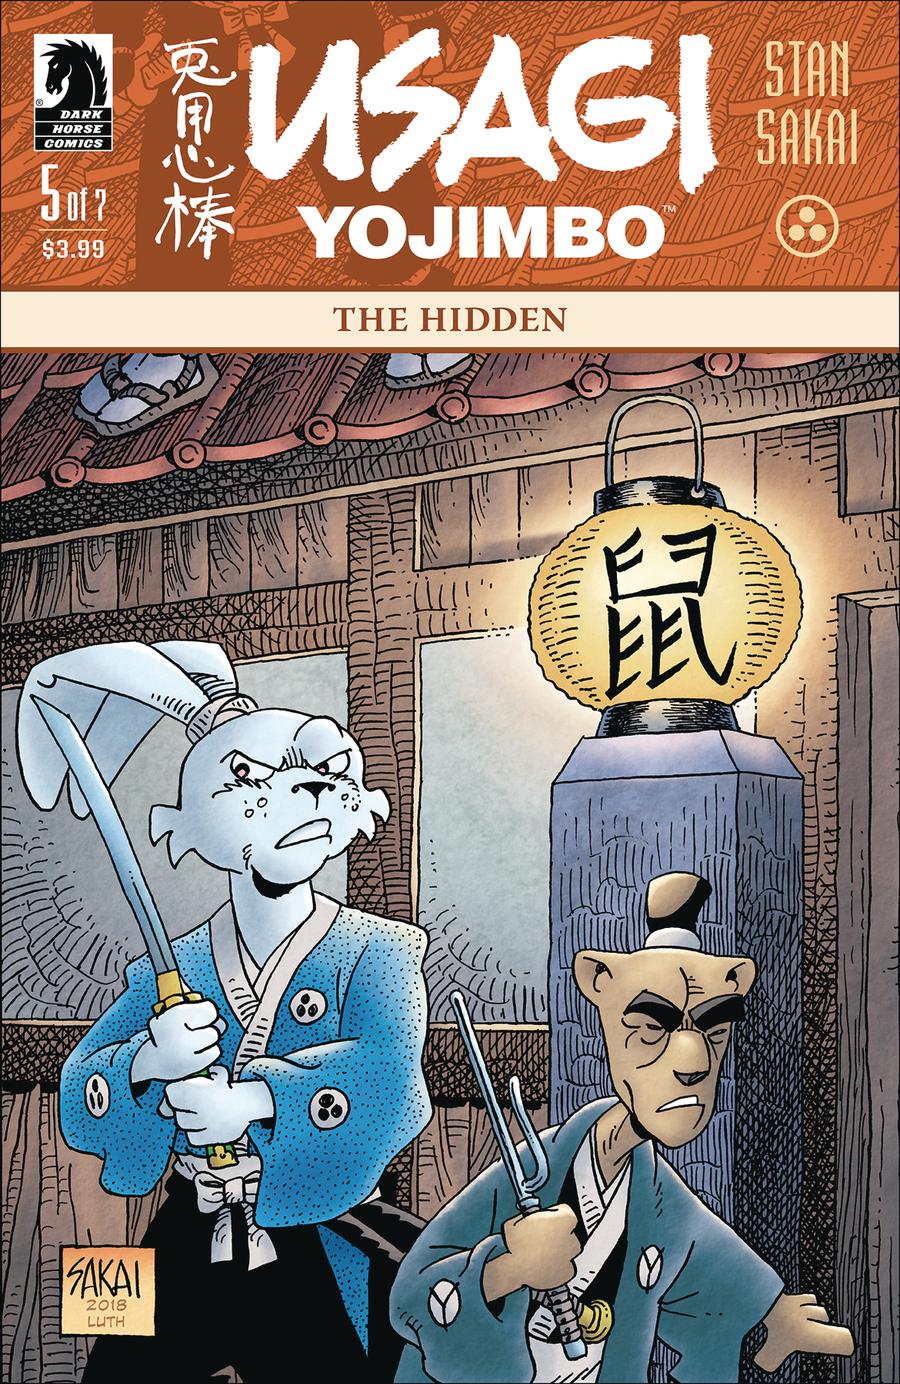 Usagi Yojimbo The Hidden #5 (of 7) [2018]